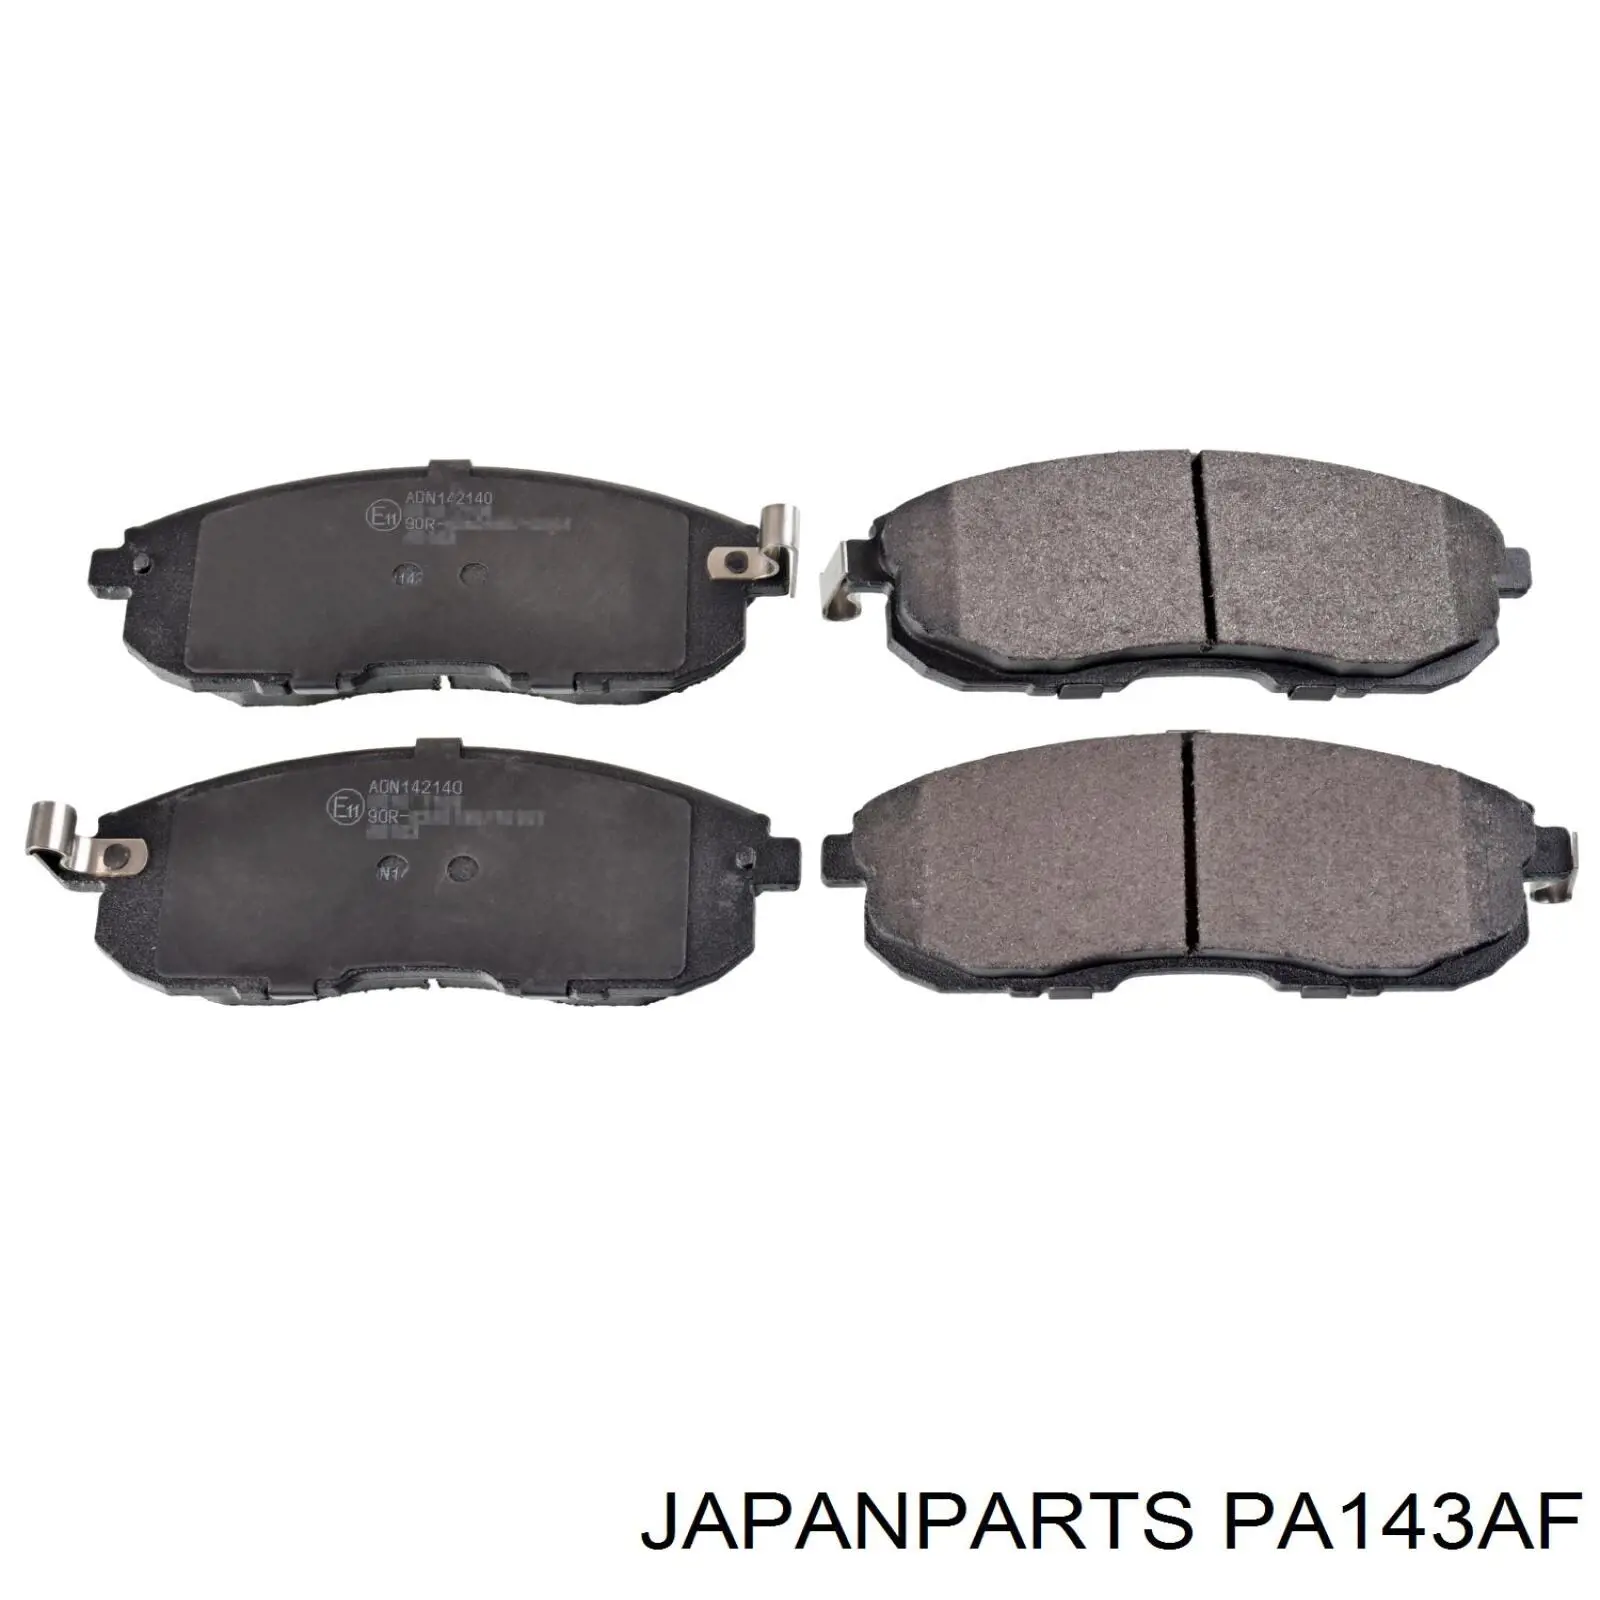 PA-143AF Japan Parts pastillas de freno delanteras